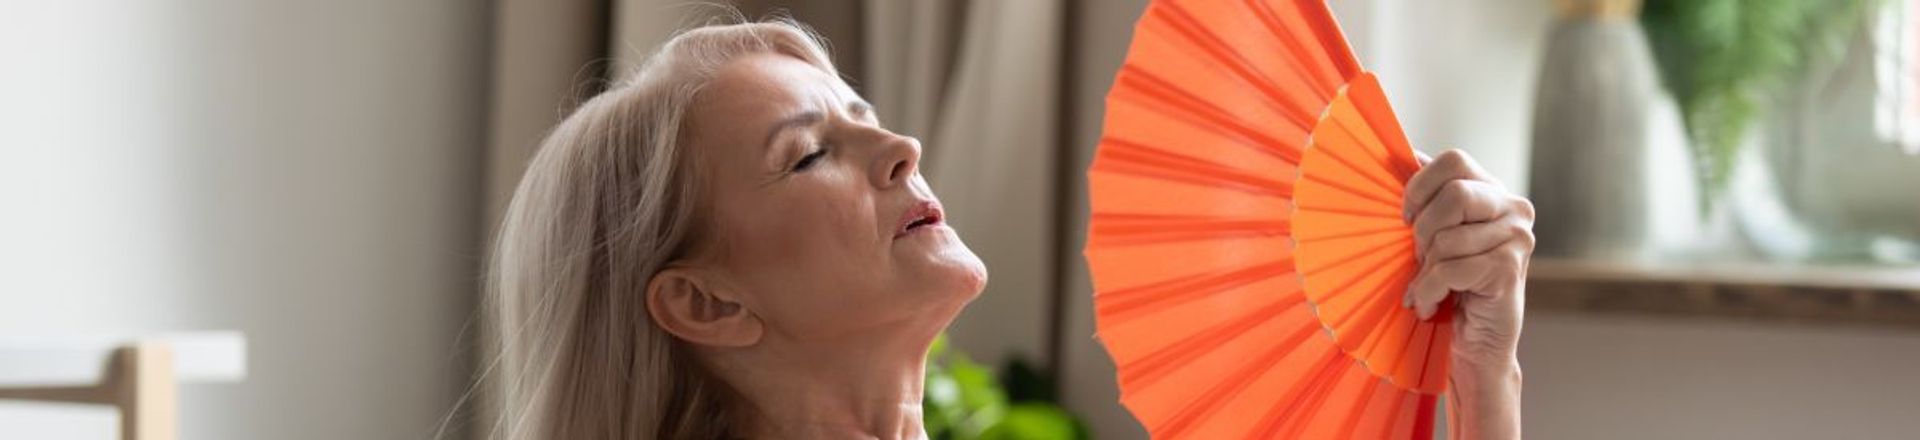 Jak złagodzić objawy menopauzy?